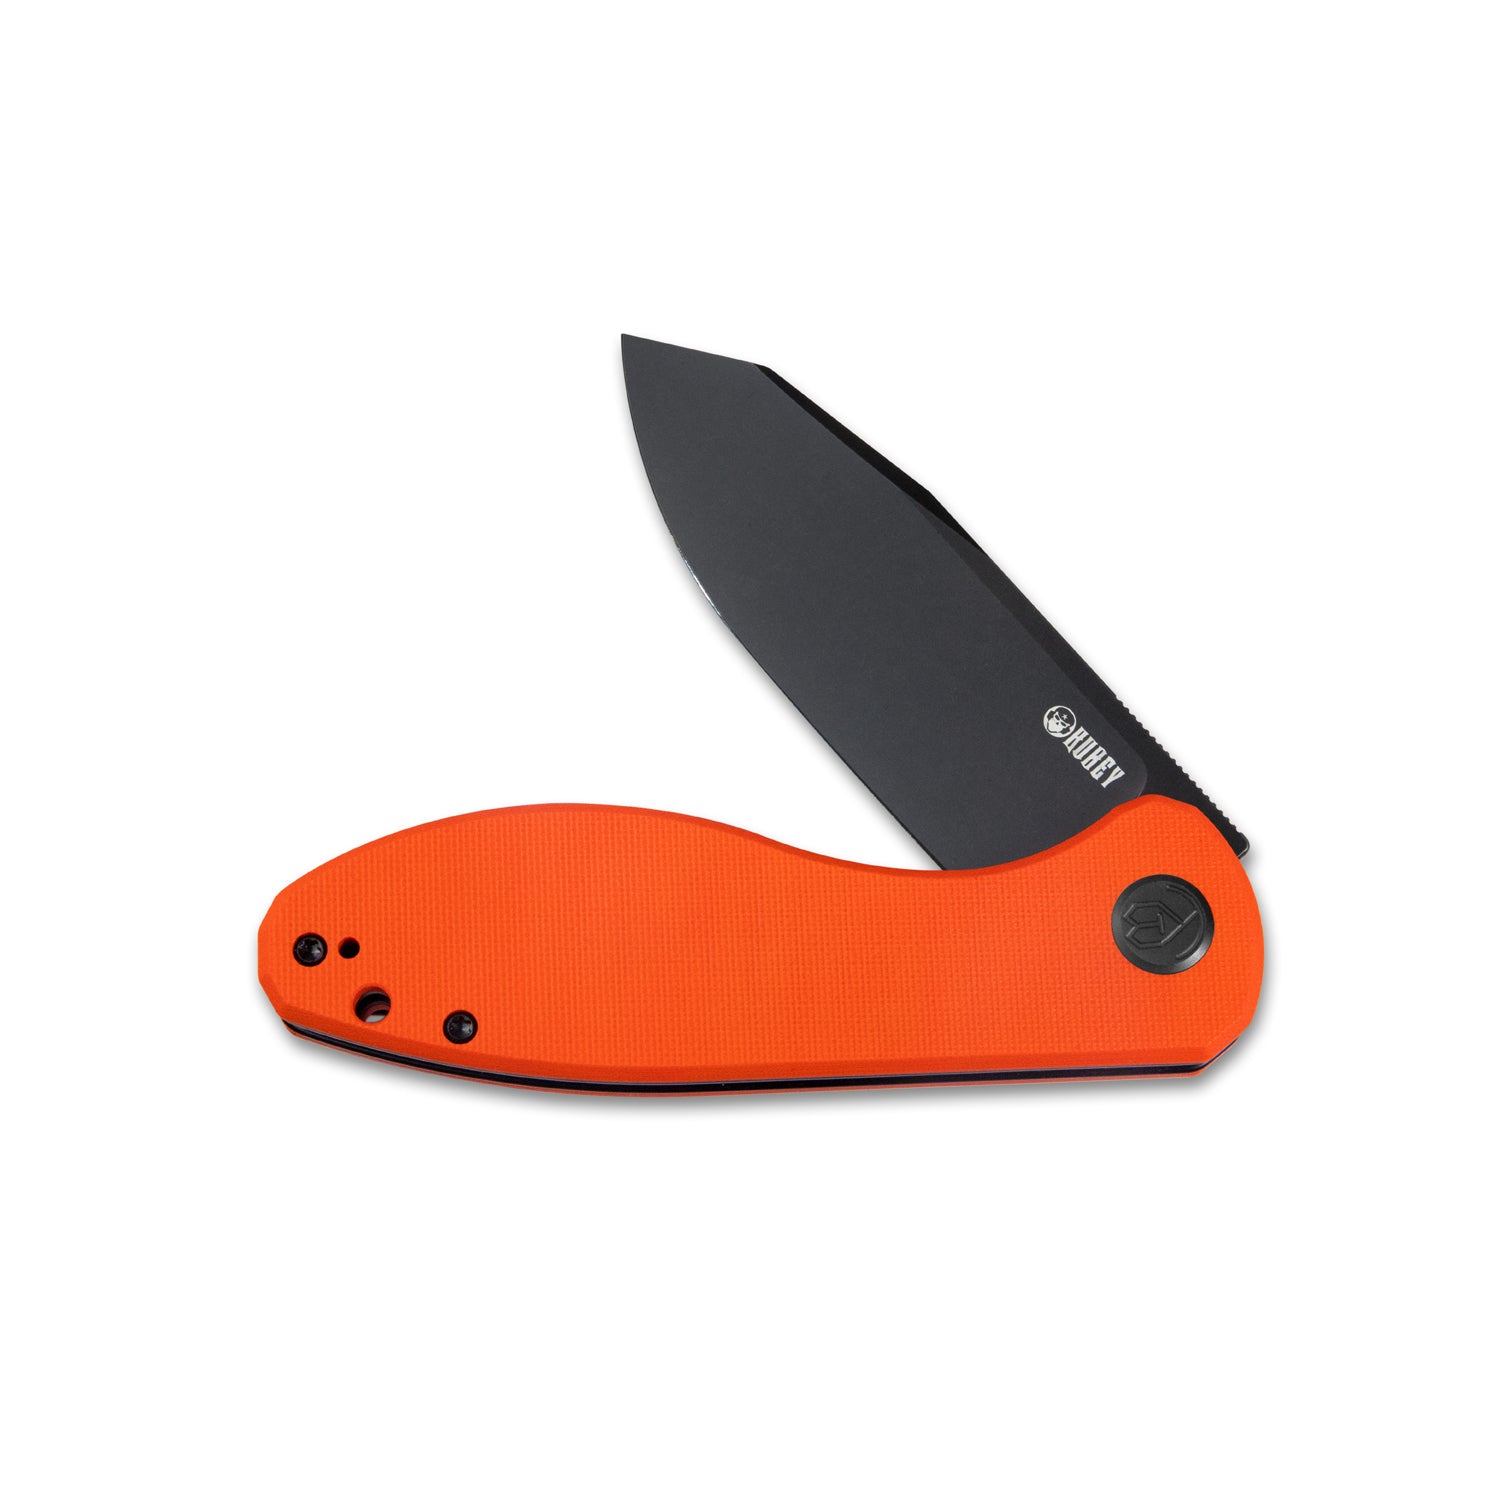 Kubey Master Chief Outdoor Folding Pocket Knife Orange G10 Handle 3.43" Blackwash AUS-10 KU358E